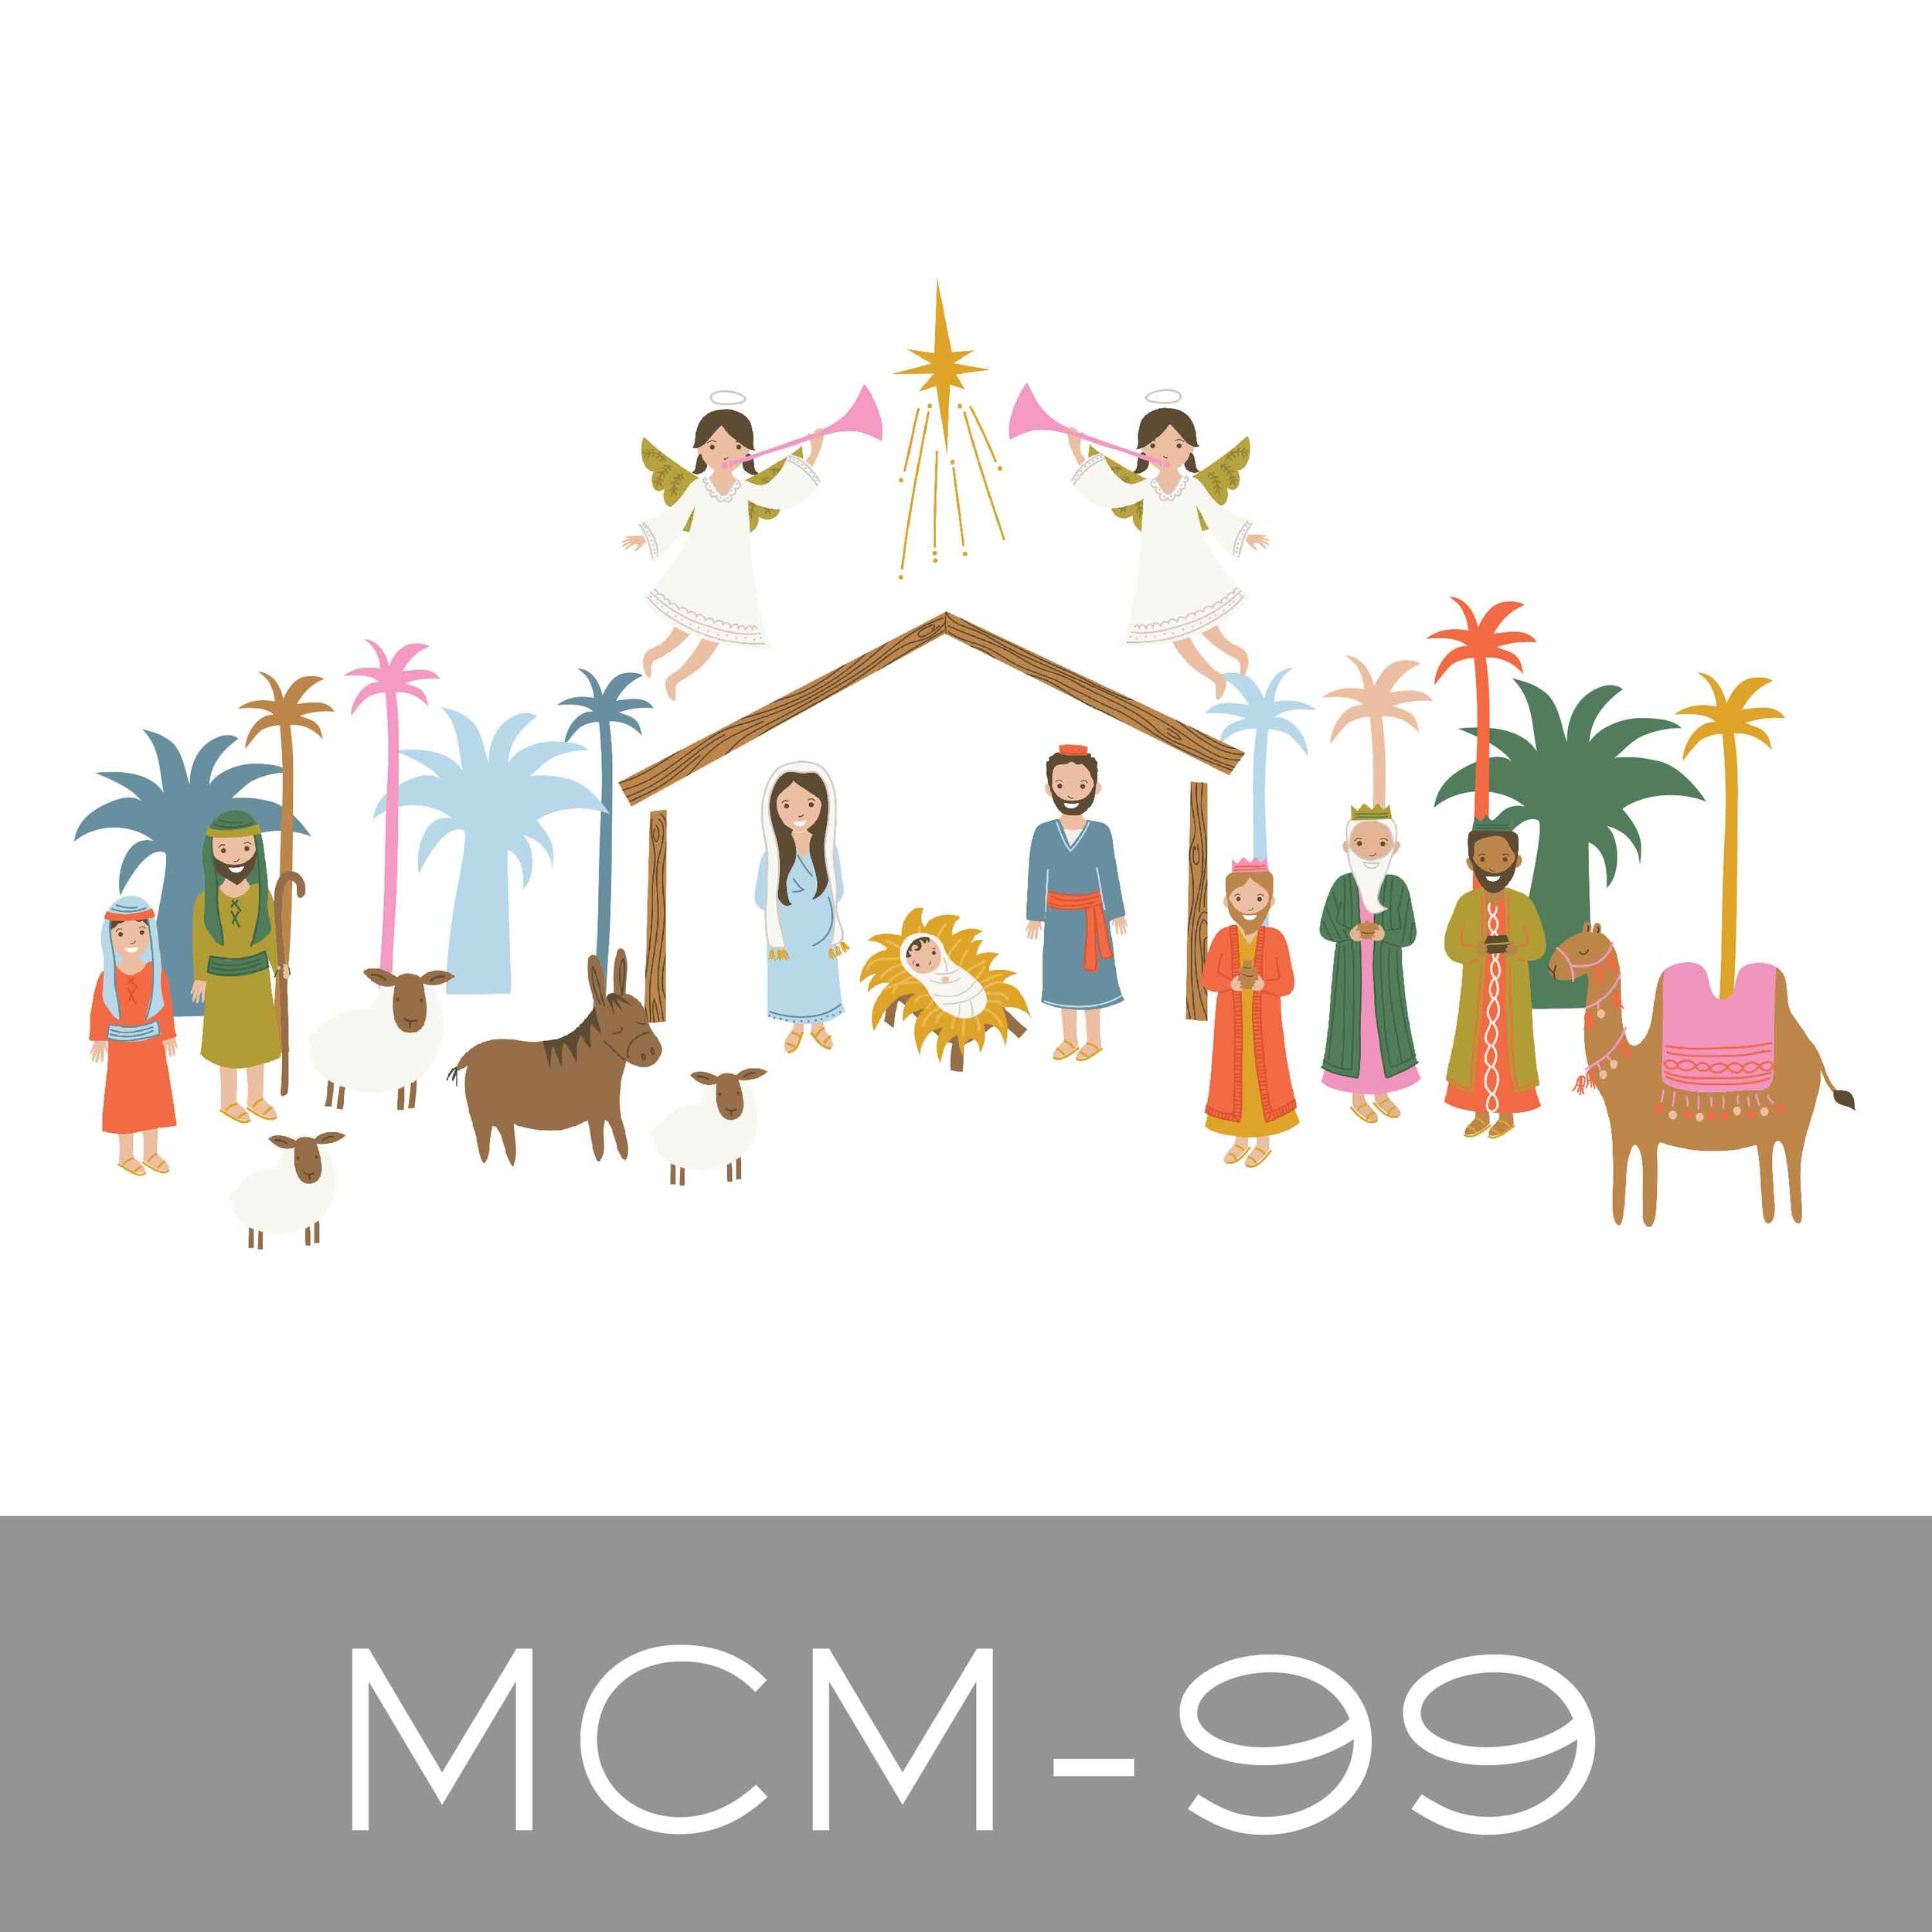 MCM-99.jpg